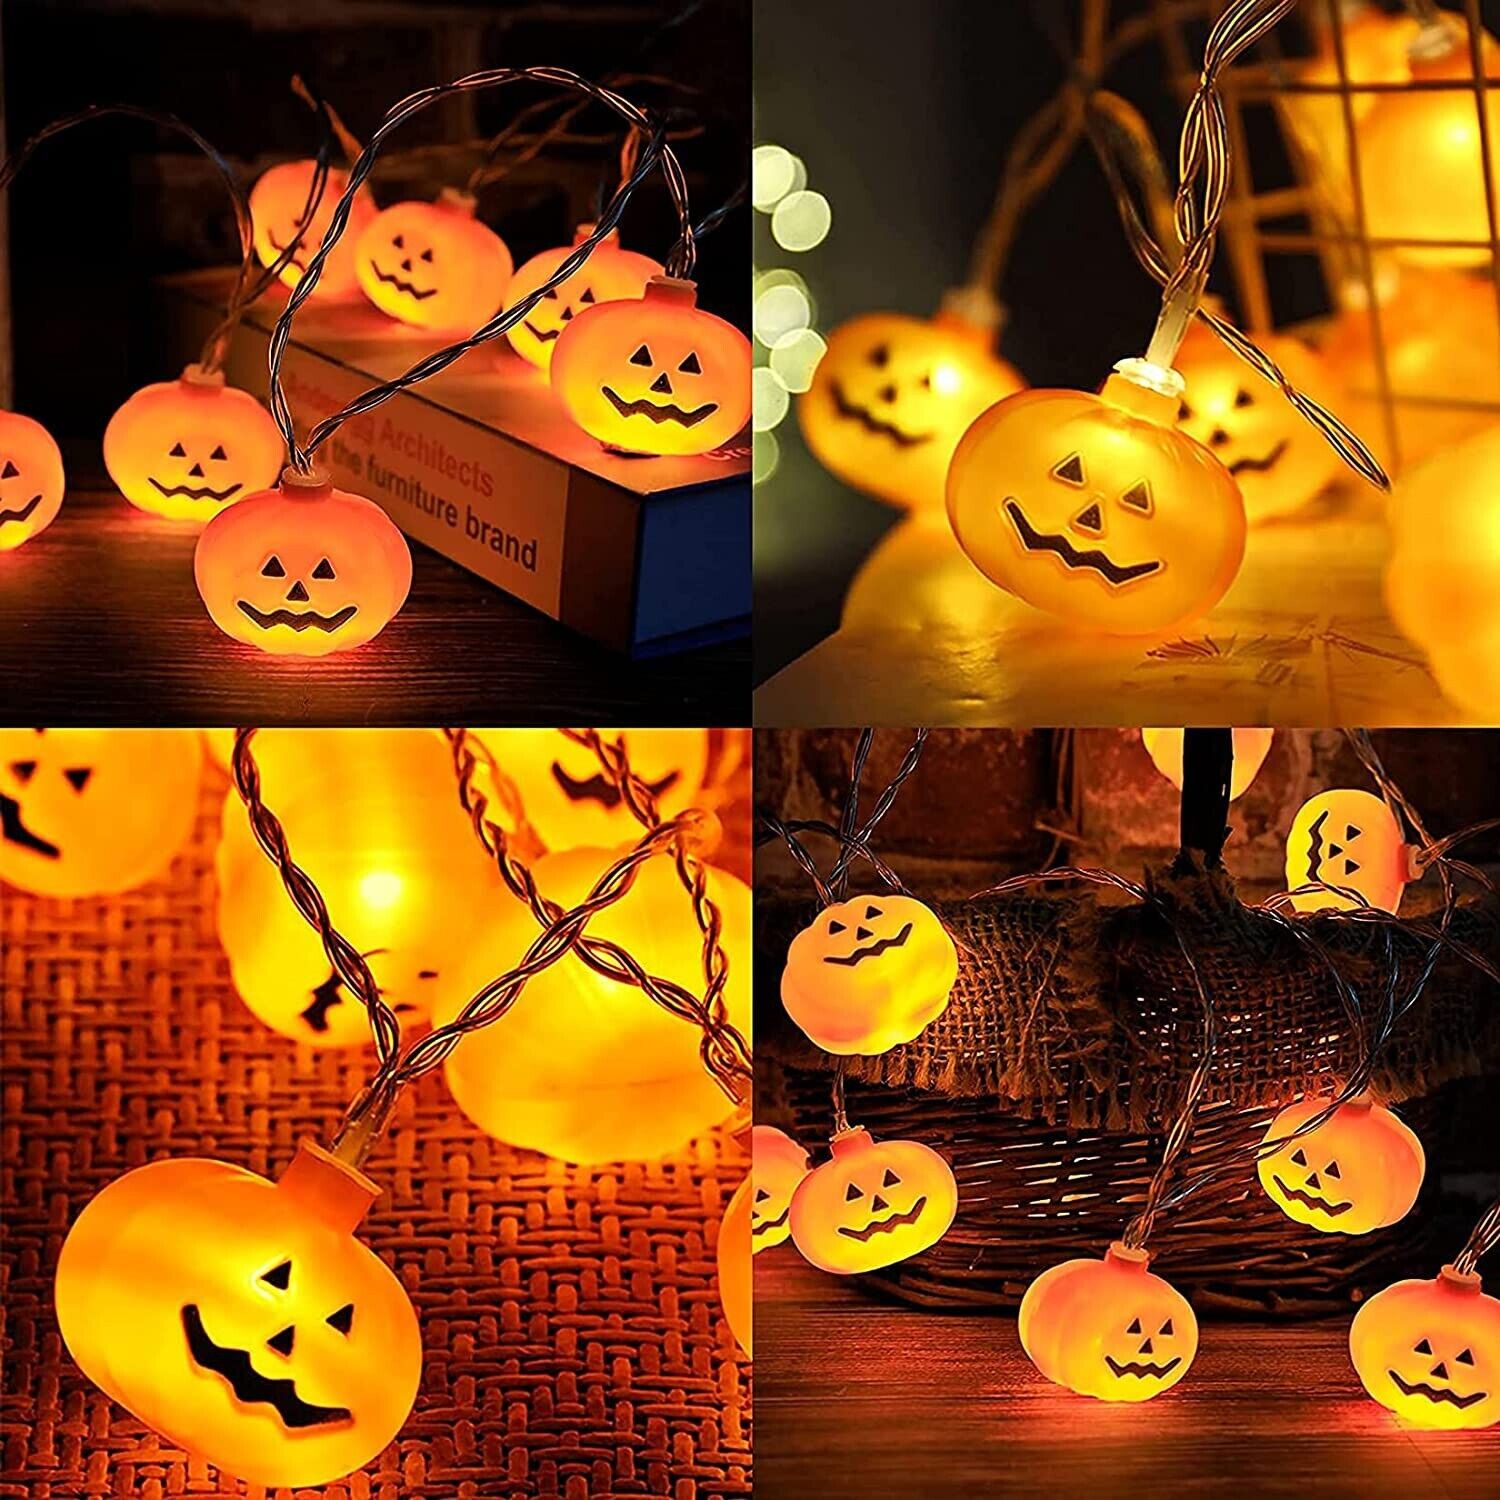 20x LED Halloween Lichterkette Geist Kürbis Hängend Beleuchtung Außen Party Deko